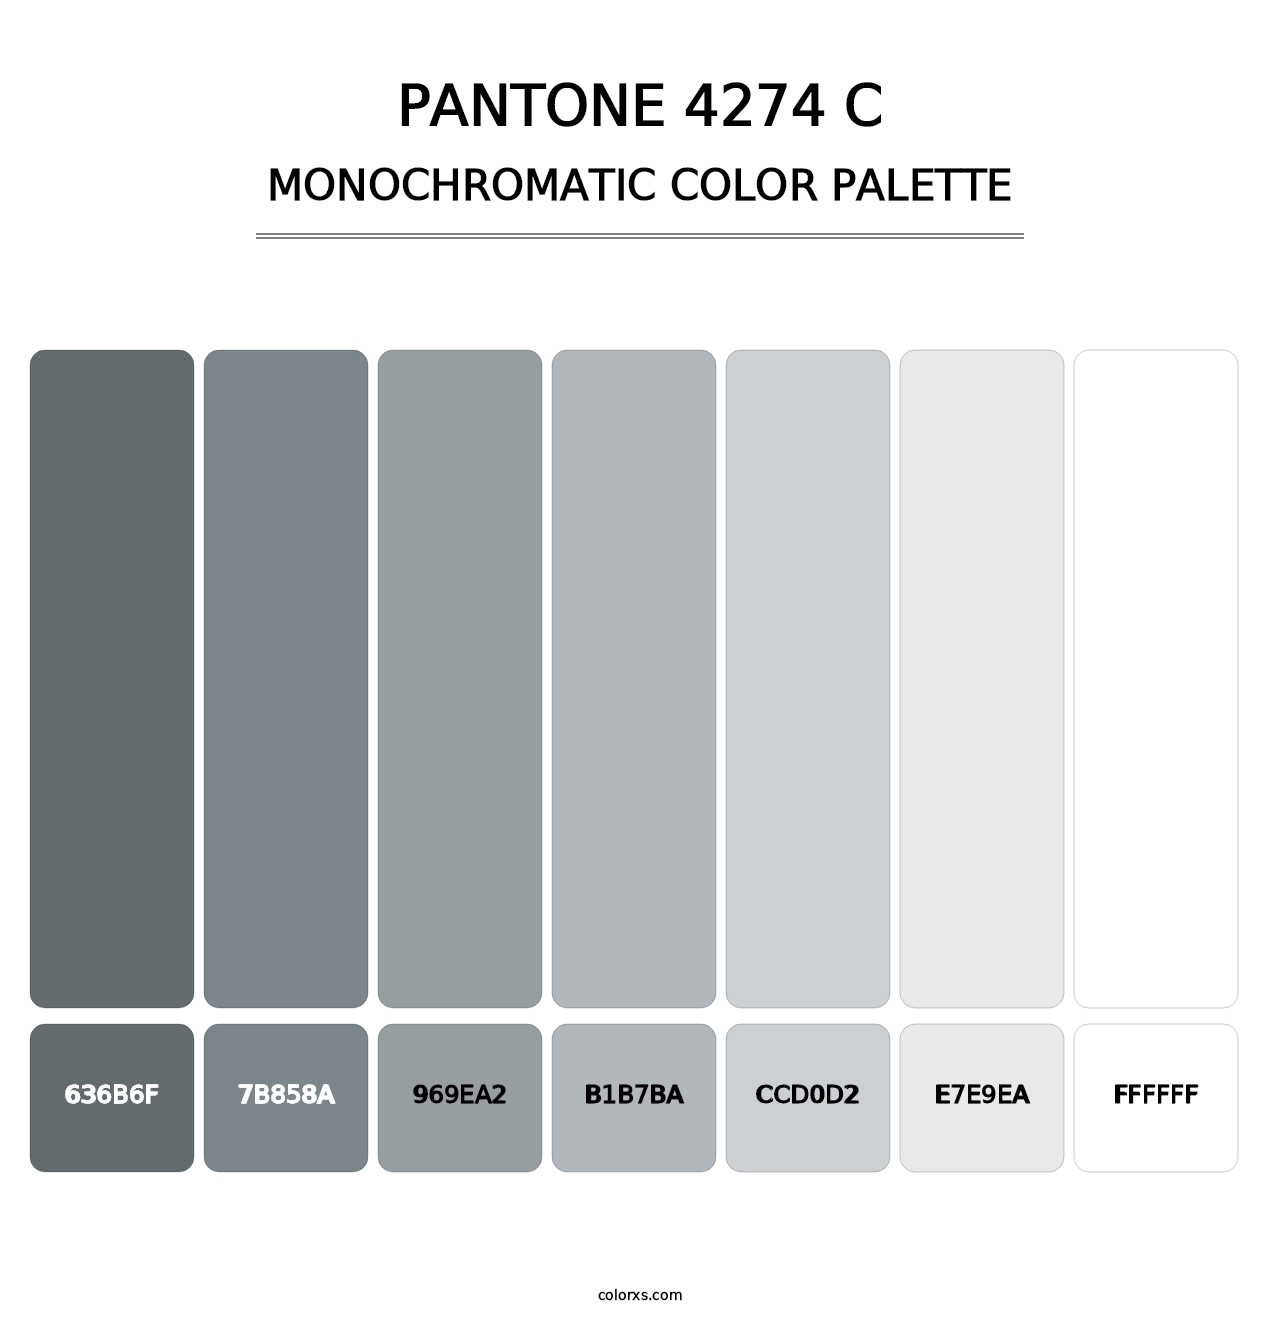 PANTONE 4274 C - Monochromatic Color Palette